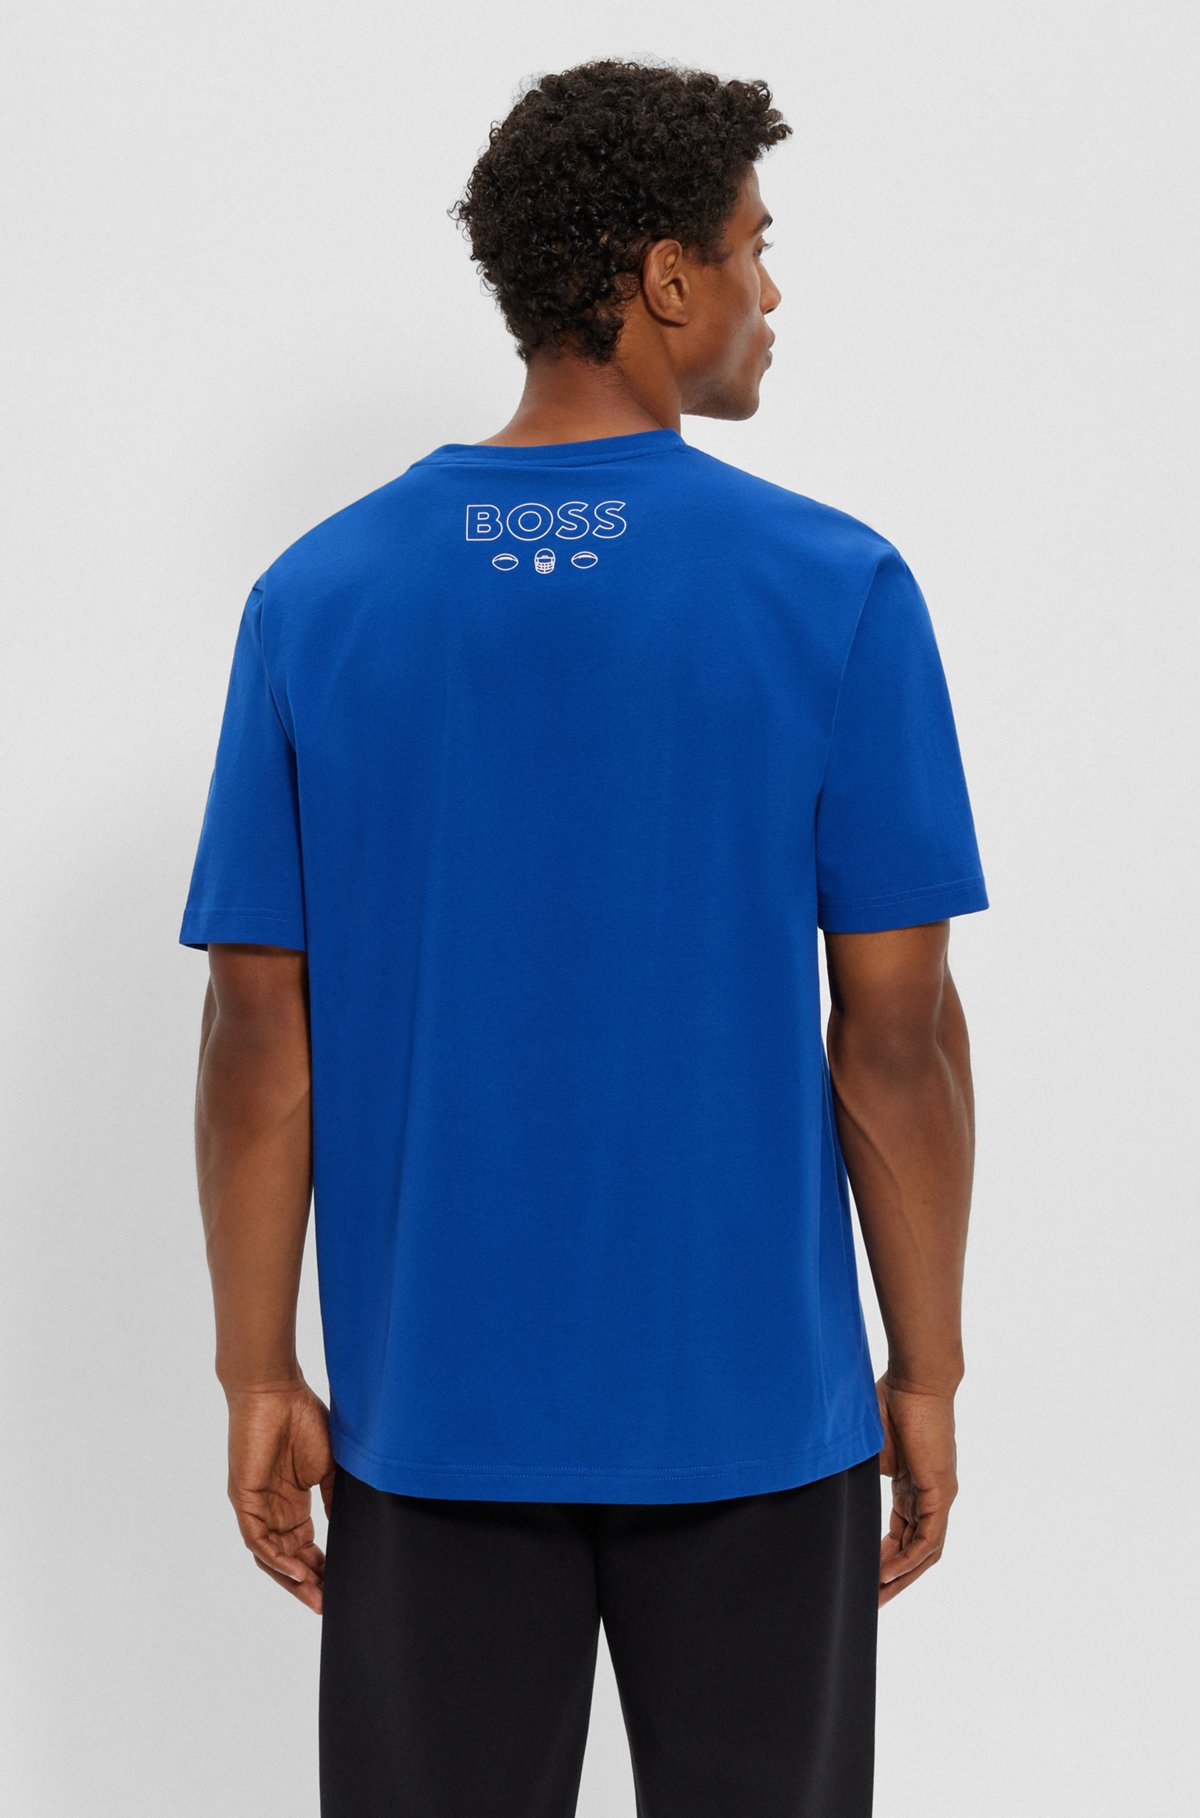  BOSS x NFL T-shirt i bomuld med stræk og fælles branding, Giants